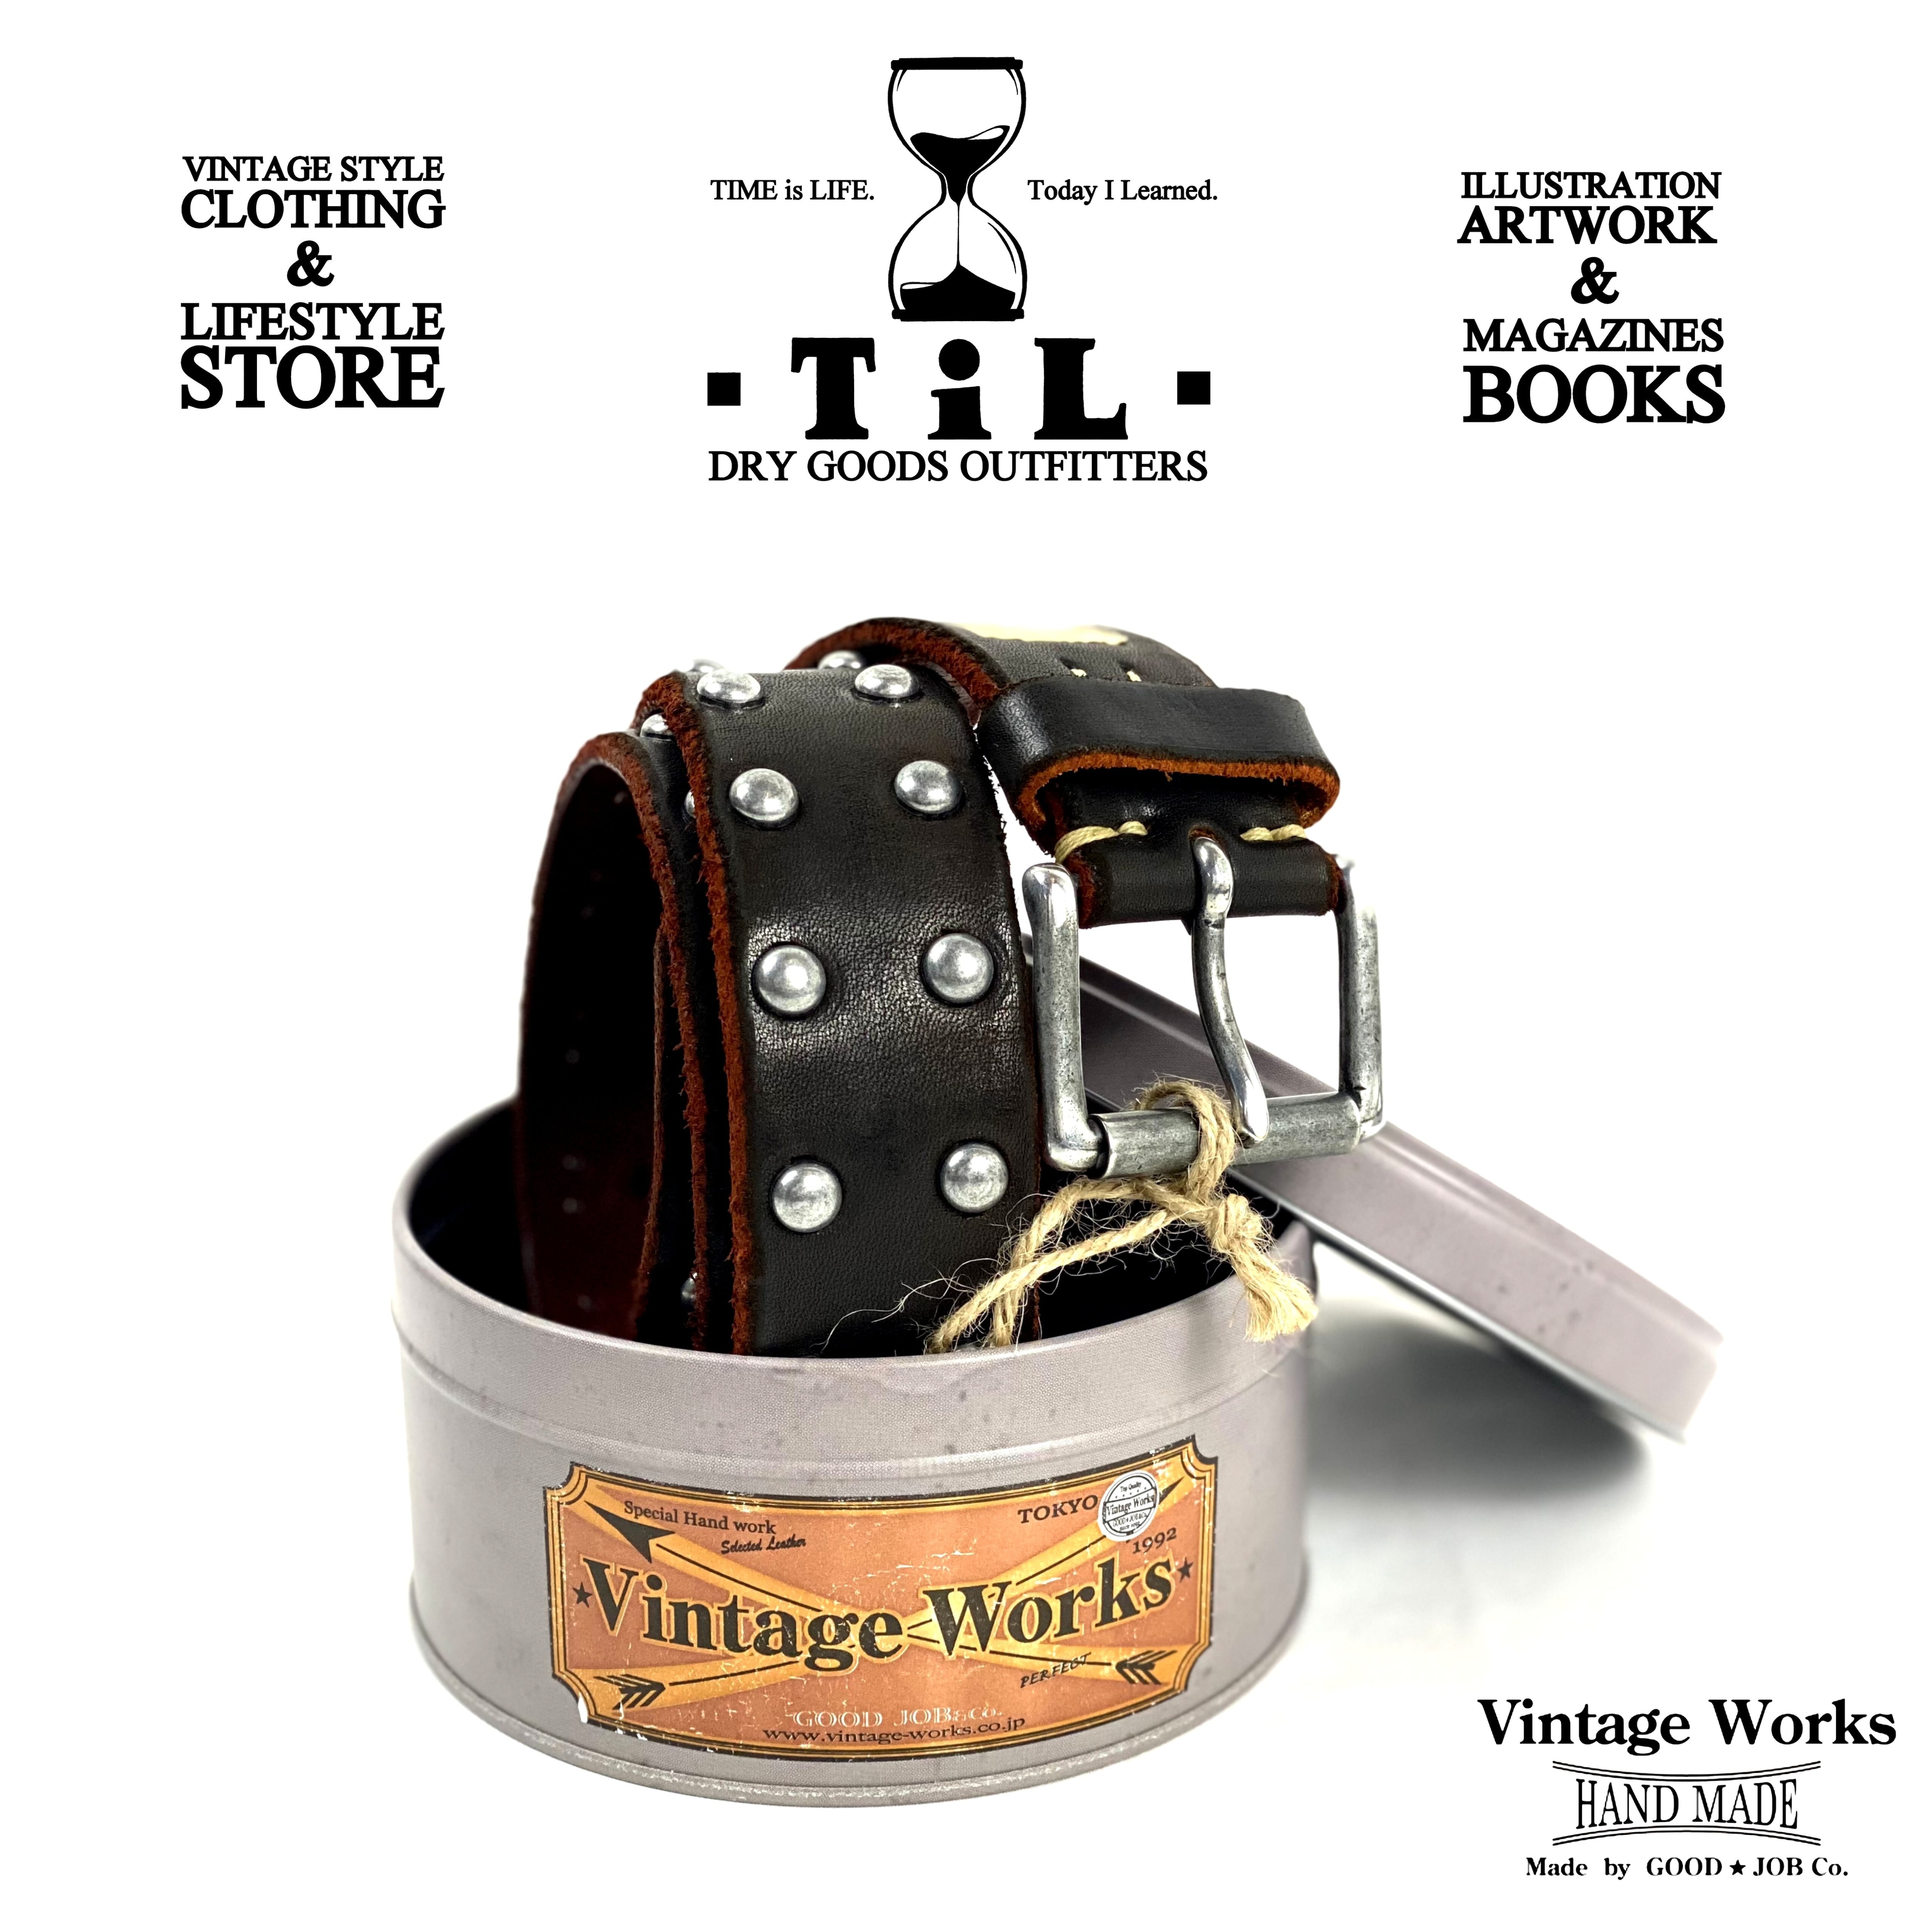 期間限定特価品 ヴィンテージワークス コンチョベルト DH5726 CH-3 茶芯 7ホール Vintage Works Leather belt  メンズ アメカジ 極厚 本革ベルト 日本製 プレゼント